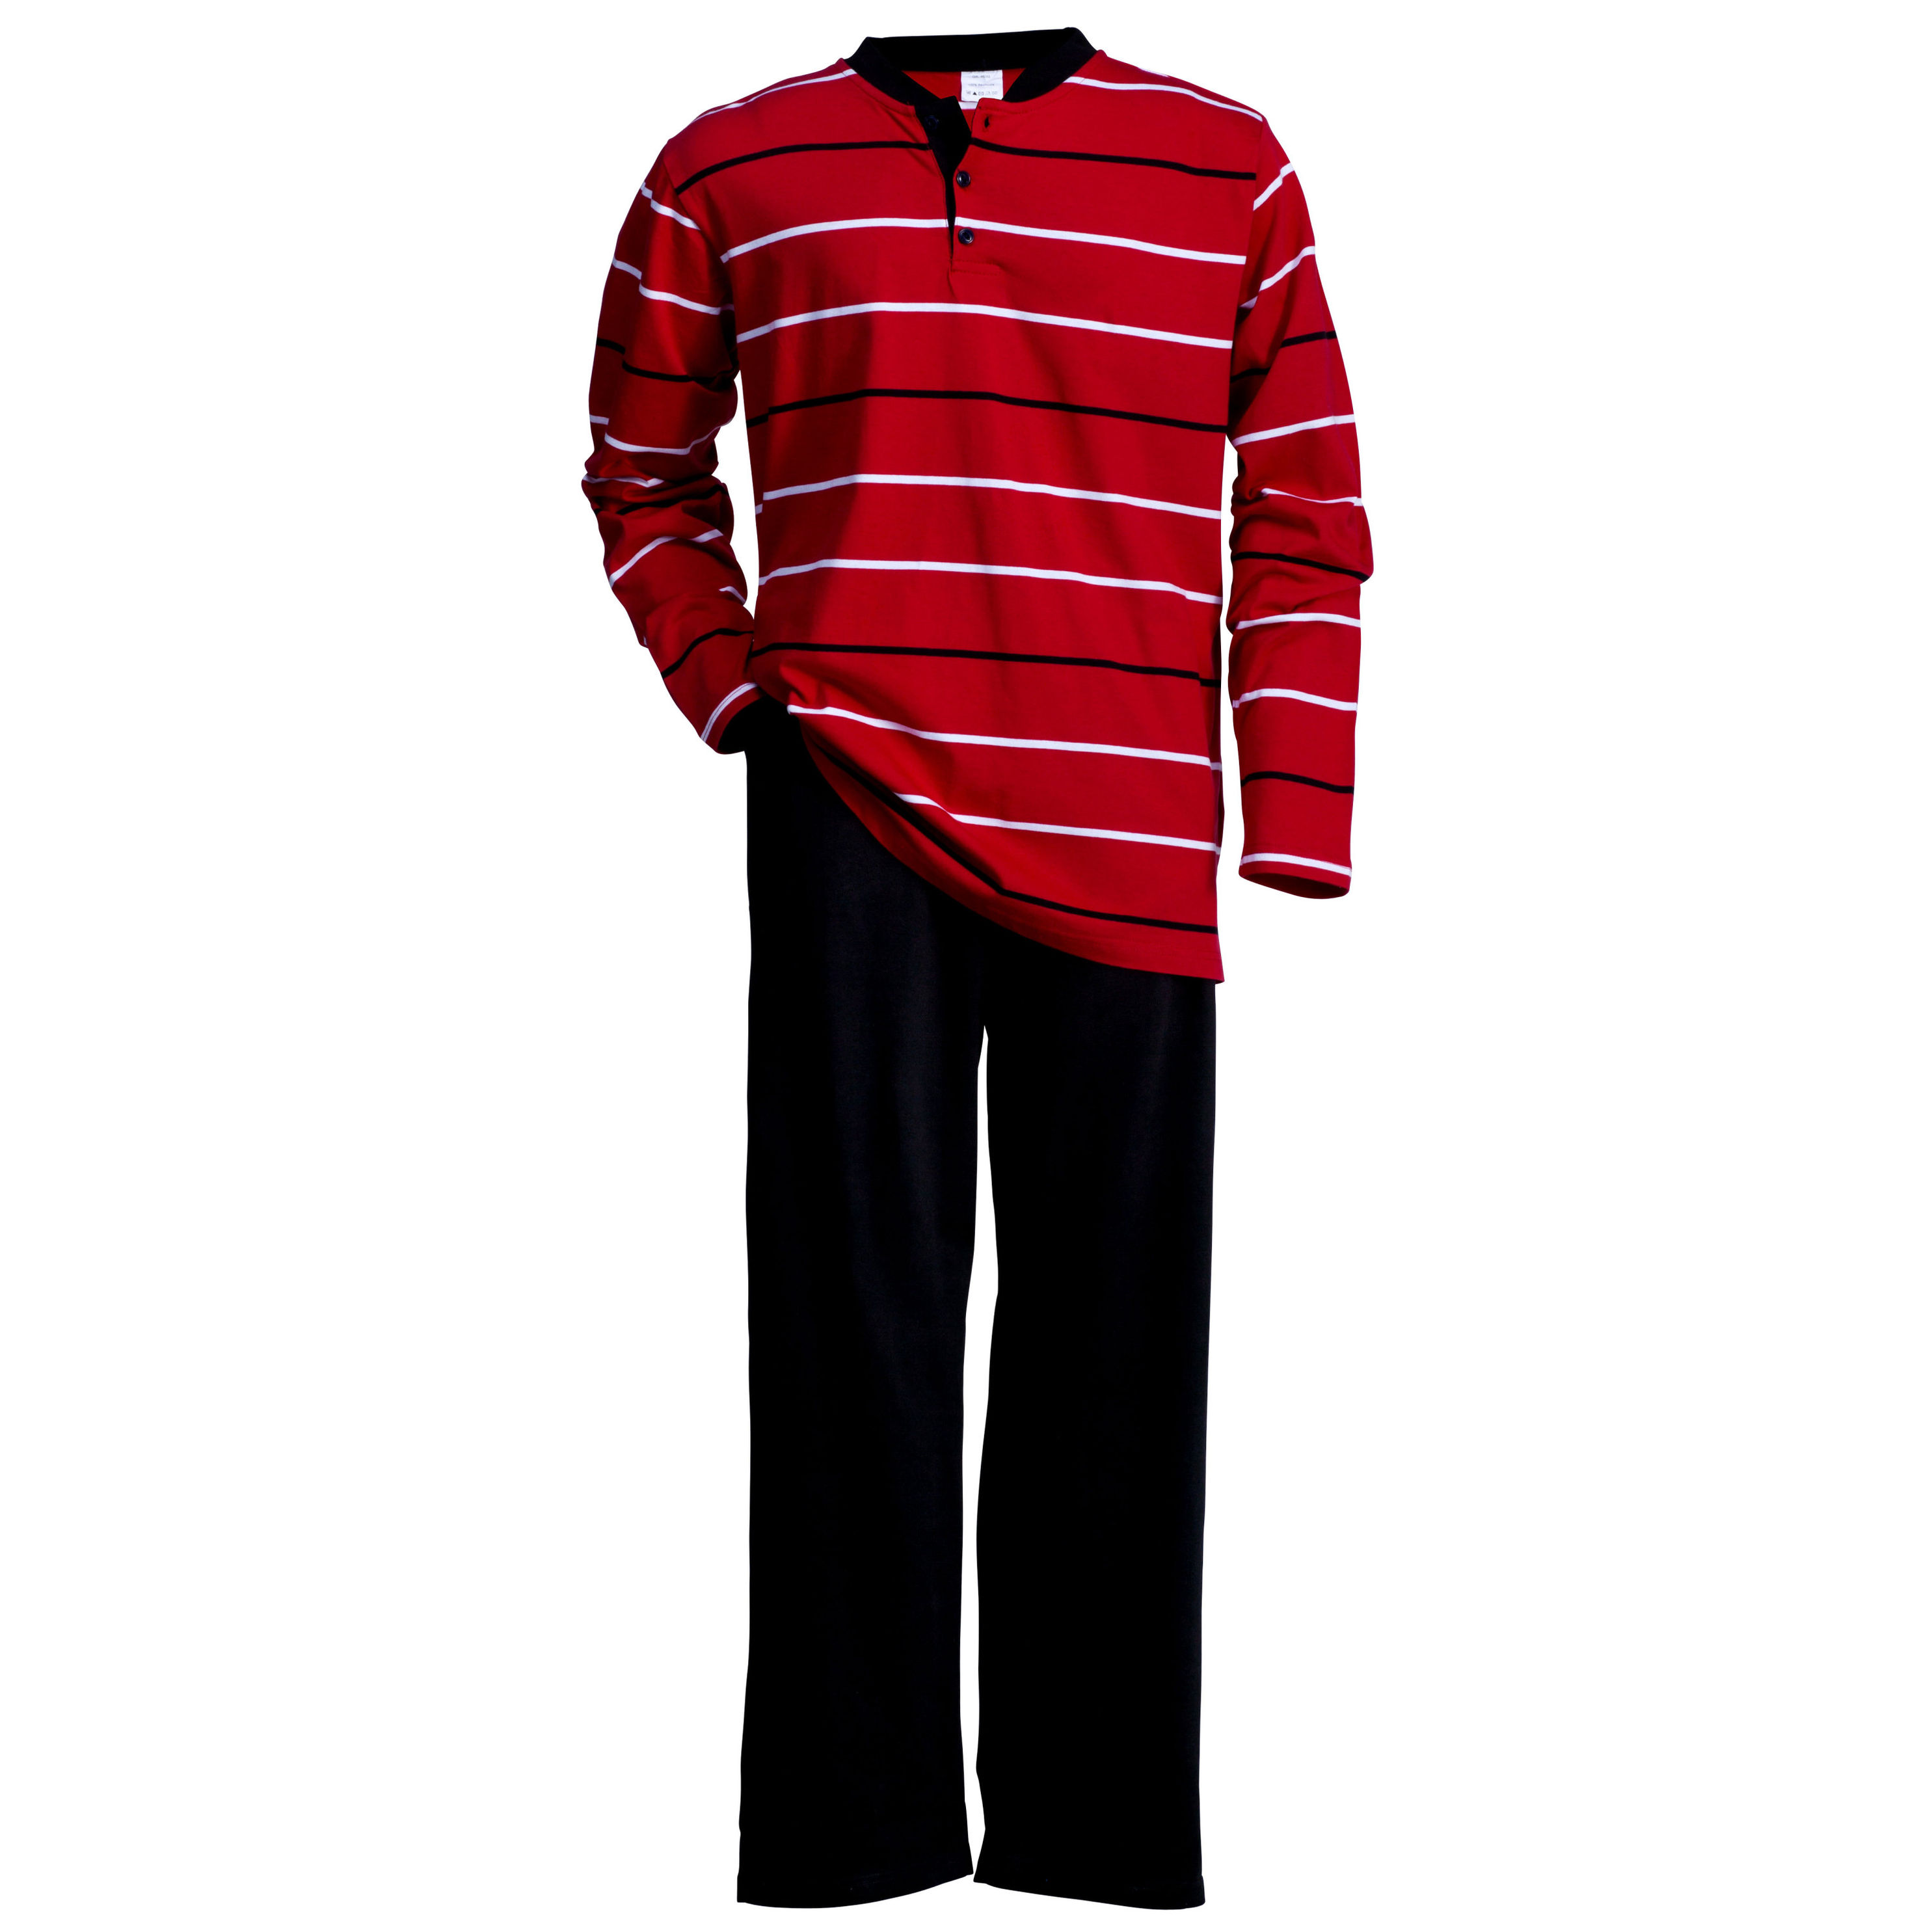 Herren Schlafanzug 2-teilig, rot schwarz Größe: 50 52 | Weltbild.de